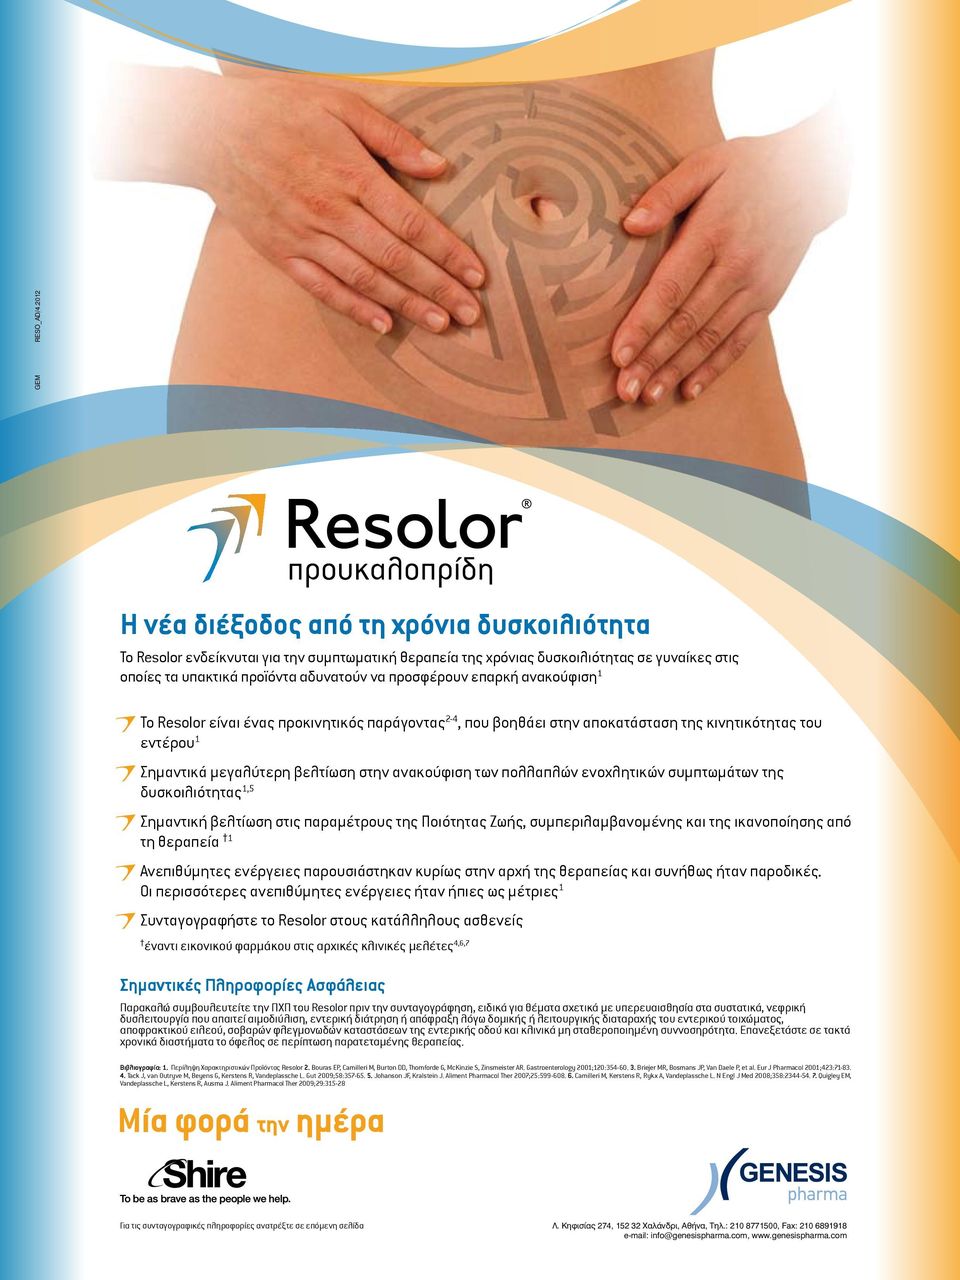 επαρκή ανακούφιση 1 Το Resolor είναι ένας προκινητικός παράγοντας 2-4, που βοηθάει στην αποκατάσταση της κινητικότητας του εντέρου 1 Σημαντικά μεγαλύτερη βελτίωση στην ανακούφιση των πολλαπλών